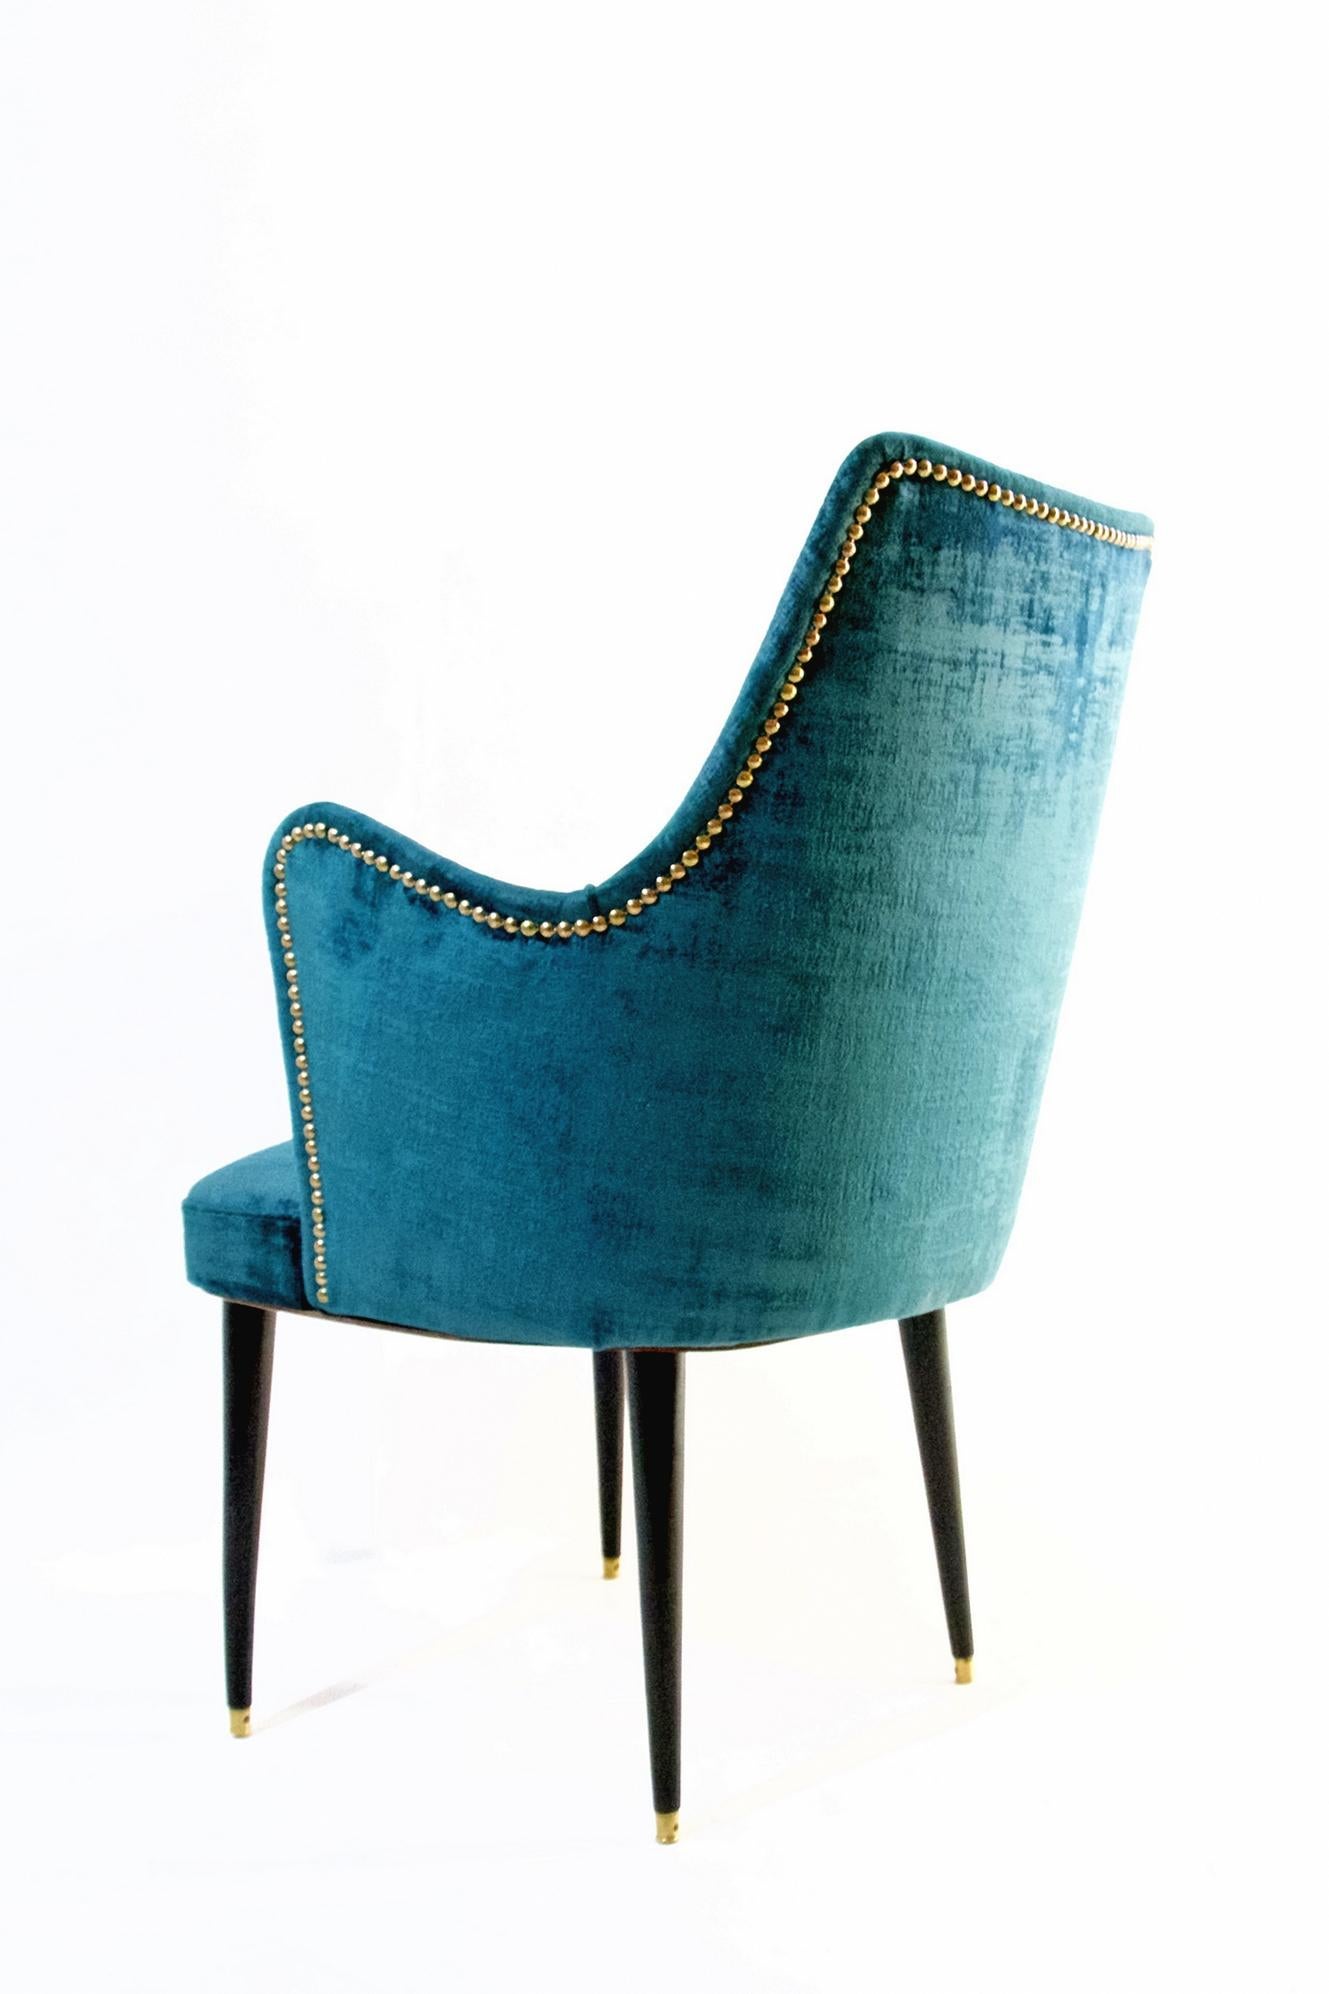 Italian Midcentury Teal Velvet Chairs by Osvaldo Borsani, Italy